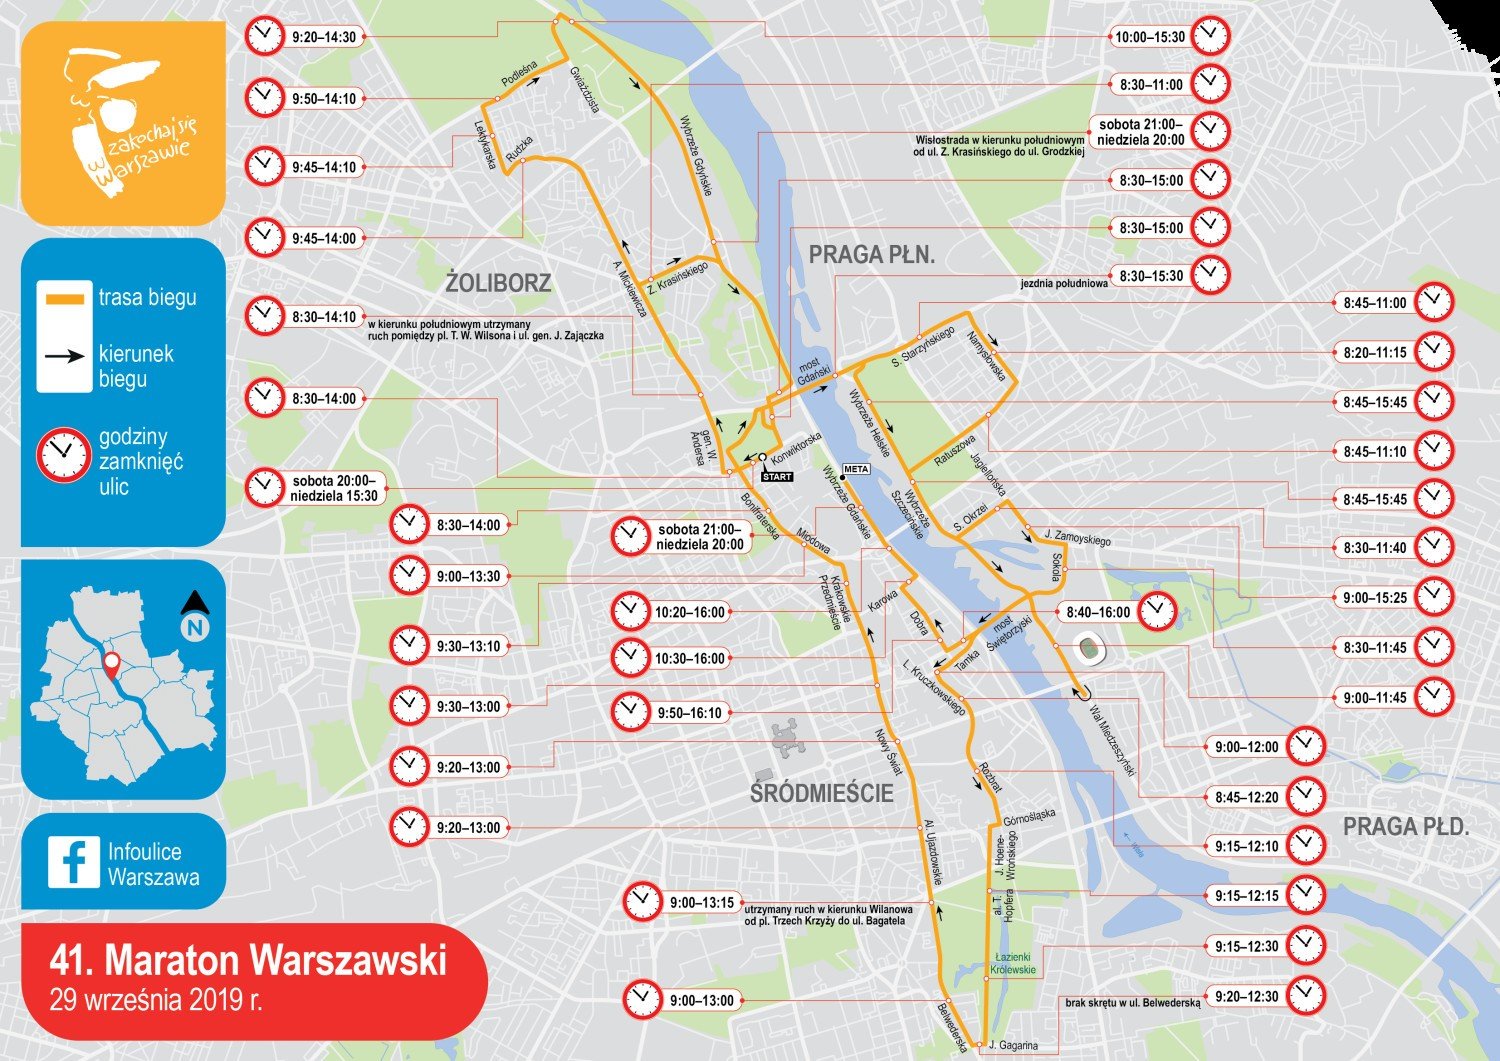 Maraton Warszawski 2019. Informator dla biegaczy i mieszkańców | Warszawa  Nasze Miasto